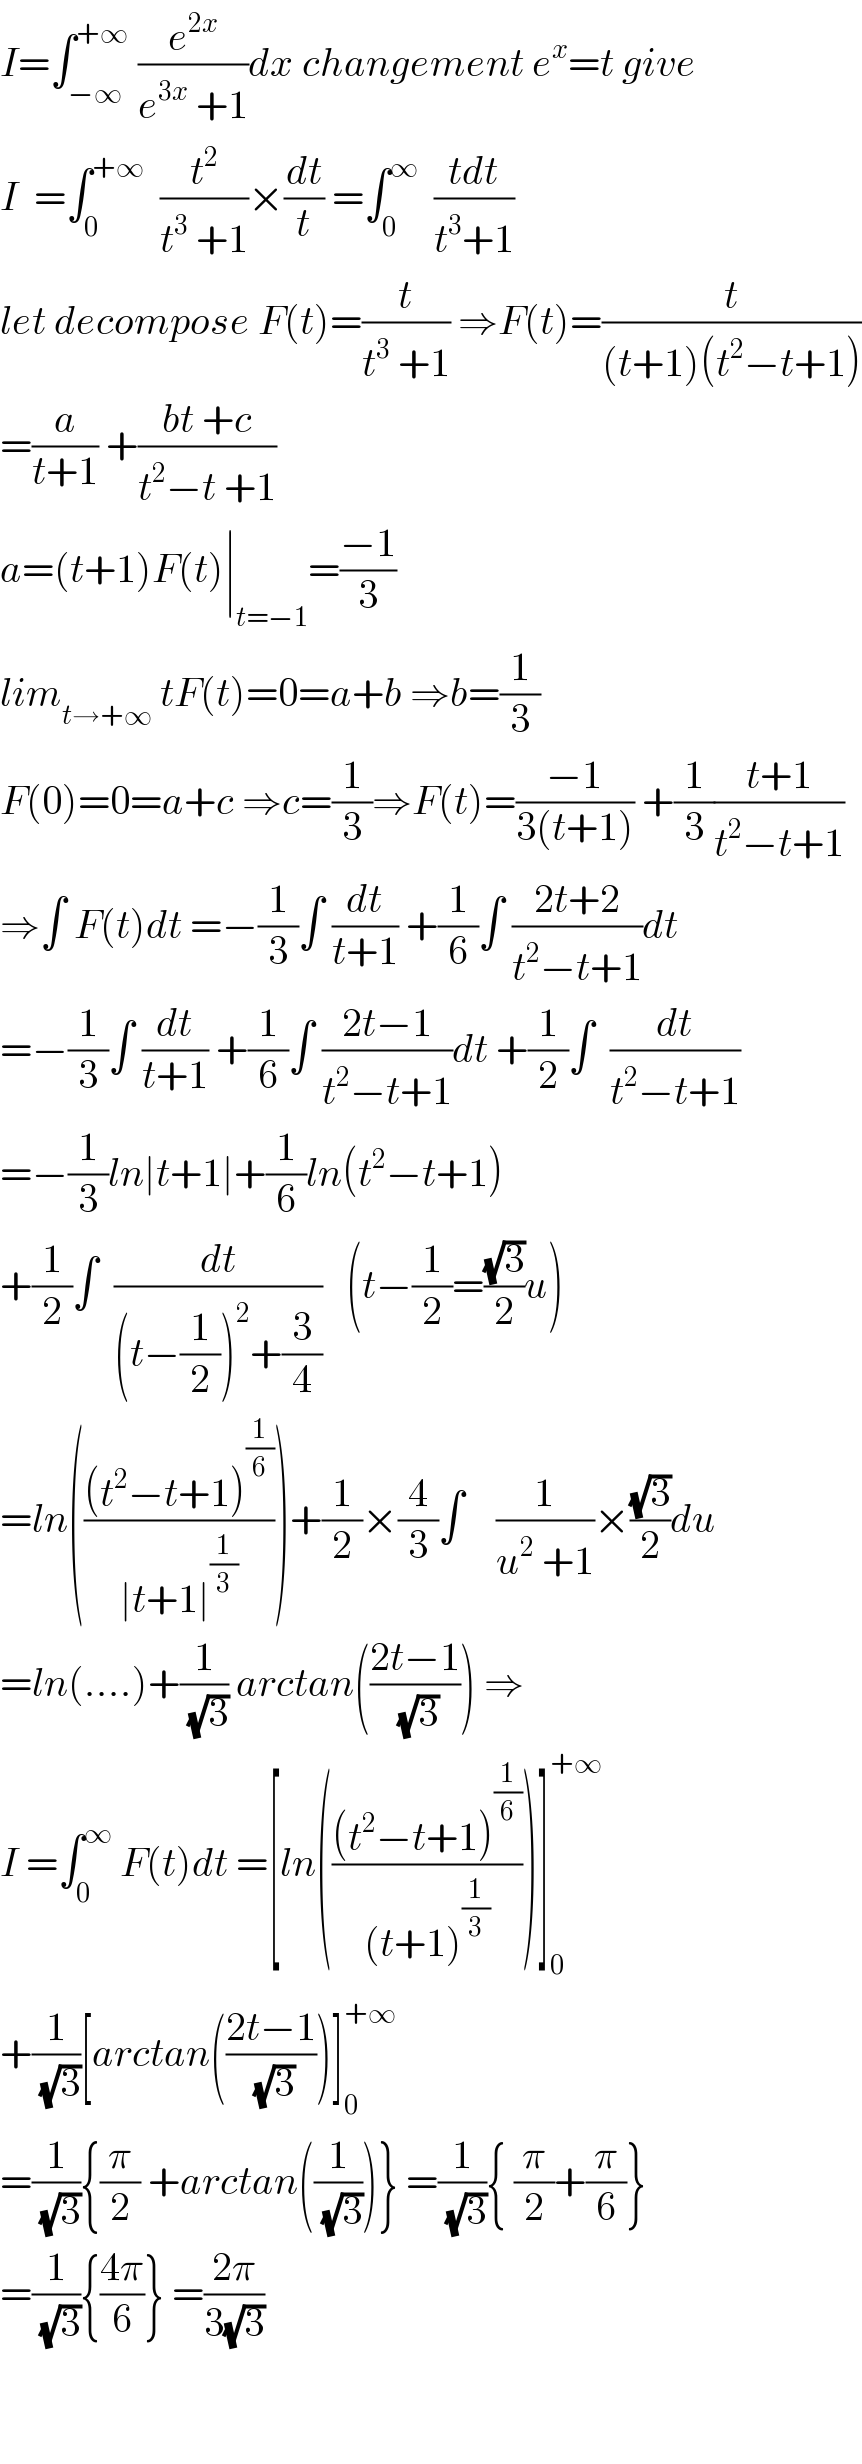 I=∫_(−∞) ^(+∞)  (e^(2x) /(e^(3x)  +1))dx changement e^x =t give  I  =∫_0 ^(+∞)   (t^2 /(t^3  +1))×(dt/t) =∫_0 ^∞   ((tdt)/(t^3 +1))  let decompose F(t)=(t/(t^3  +1)) ⇒F(t)=(t/((t+1)(t^2 −t+1)))  =(a/(t+1)) +((bt +c)/(t^2 −t +1))  a=(t+1)F(t)∣_(t=−1) =((−1)/3)  lim_(t→+∞)  tF(t)=0=a+b ⇒b=(1/3)   F(0)=0=a+c ⇒c=(1/3)⇒F(t)=((−1)/(3(t+1))) +(1/3)((t+1)/(t^2 −t+1))  ⇒∫ F(t)dt =−(1/3)∫ (dt/(t+1)) +(1/6)∫ ((2t+2)/(t^2 −t+1))dt  =−(1/3)∫ (dt/(t+1)) +(1/6)∫ ((2t−1)/(t^2 −t+1))dt +(1/2)∫  (dt/(t^2 −t+1))  =−(1/3)ln∣t+1∣+(1/6)ln(t^2 −t+1)  +(1/2)∫  (dt/((t−(1/2))^2 +(3/4)))   (t−(1/2)=((√3)/2)u)  =ln((((t^2 −t+1)^(1/6) )/(∣t+1∣^(1/3) )))+(1/2)×(4/3)∫    (1/(u^2  +1))×((√3)/2)du  =ln(....)+(1/(√3)) arctan(((2t−1)/(√3))) ⇒  I =∫_0 ^∞  F(t)dt =[ln((((t^2 −t+1)^(1/6) )/((t+1)^(1/3) )))]_0 ^(+∞)   +(1/(√3))[arctan(((2t−1)/(√3)))]_0 ^(+∞)   =(1/(√3)){(π/2) +arctan((1/(√3)))} =(1/(√3)){ (π/2)+(π/6)}  =(1/(√3)){((4π)/6)} =((2π)/(3(√3)))      